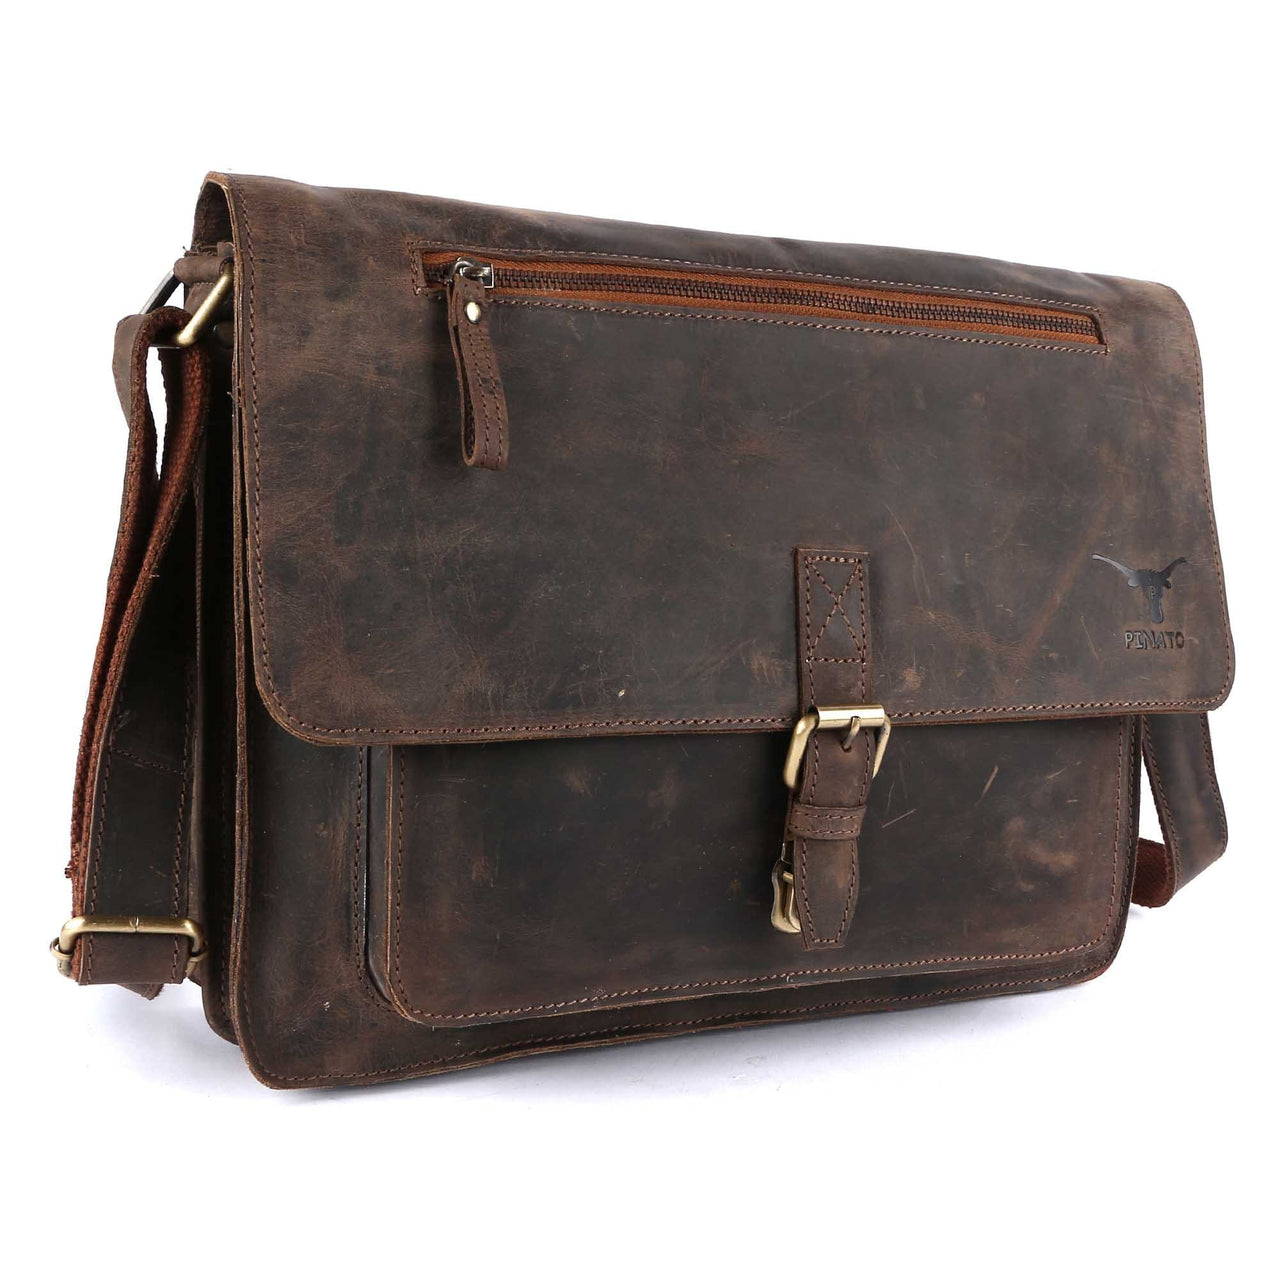 Pinato Leather Cognac Briefcase Portfolio, Messenger Bag for Men & Women (PL-5018)